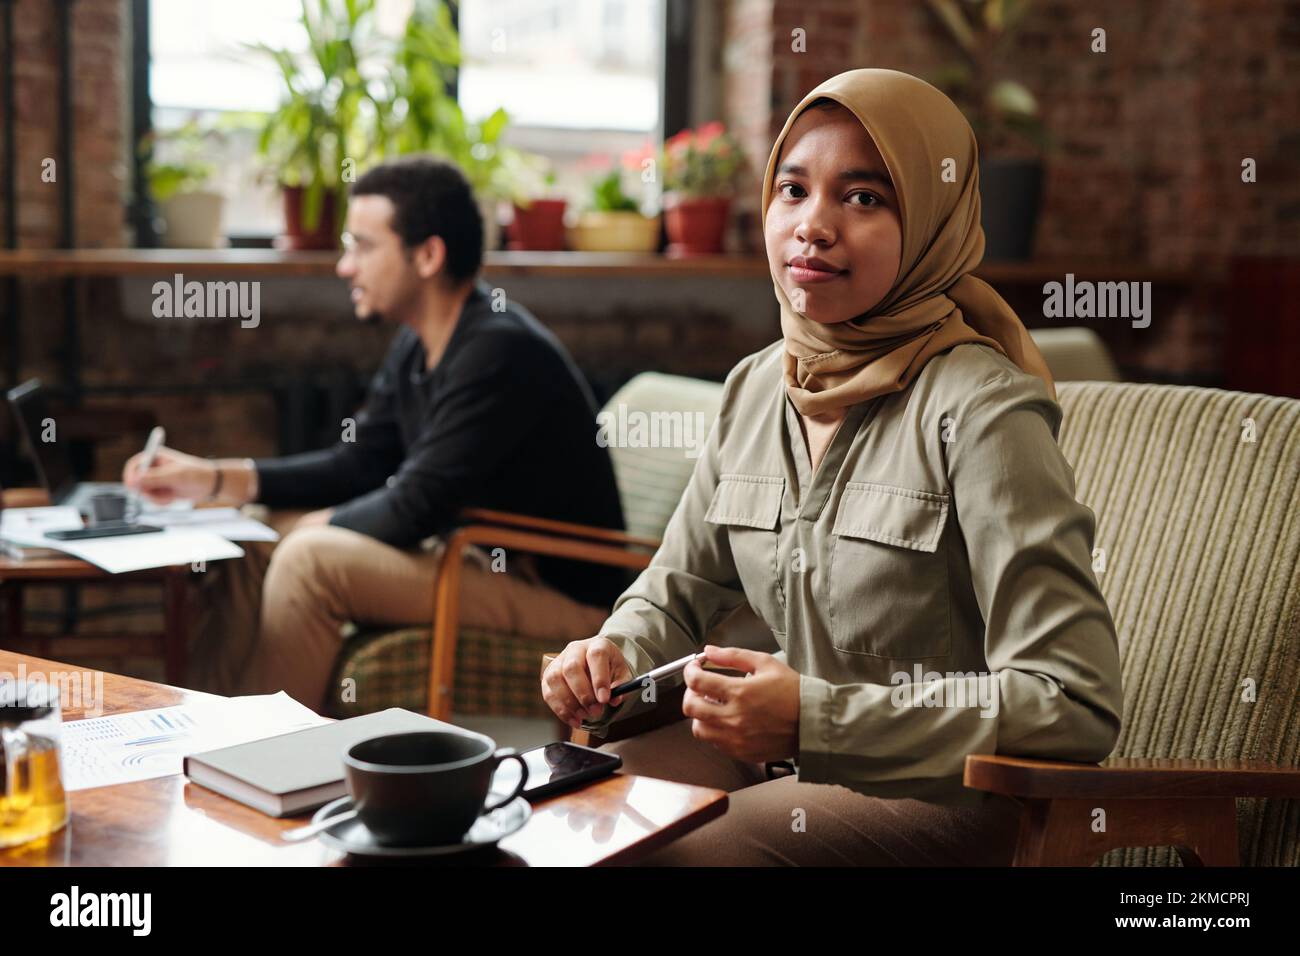 Junge, hübsche Geschäftsfrau im Hijab, sitzt am Tisch vor der Kamera und sieht dich an, während sie Arbeit gegen einen Kollegen organisiert Stockfoto